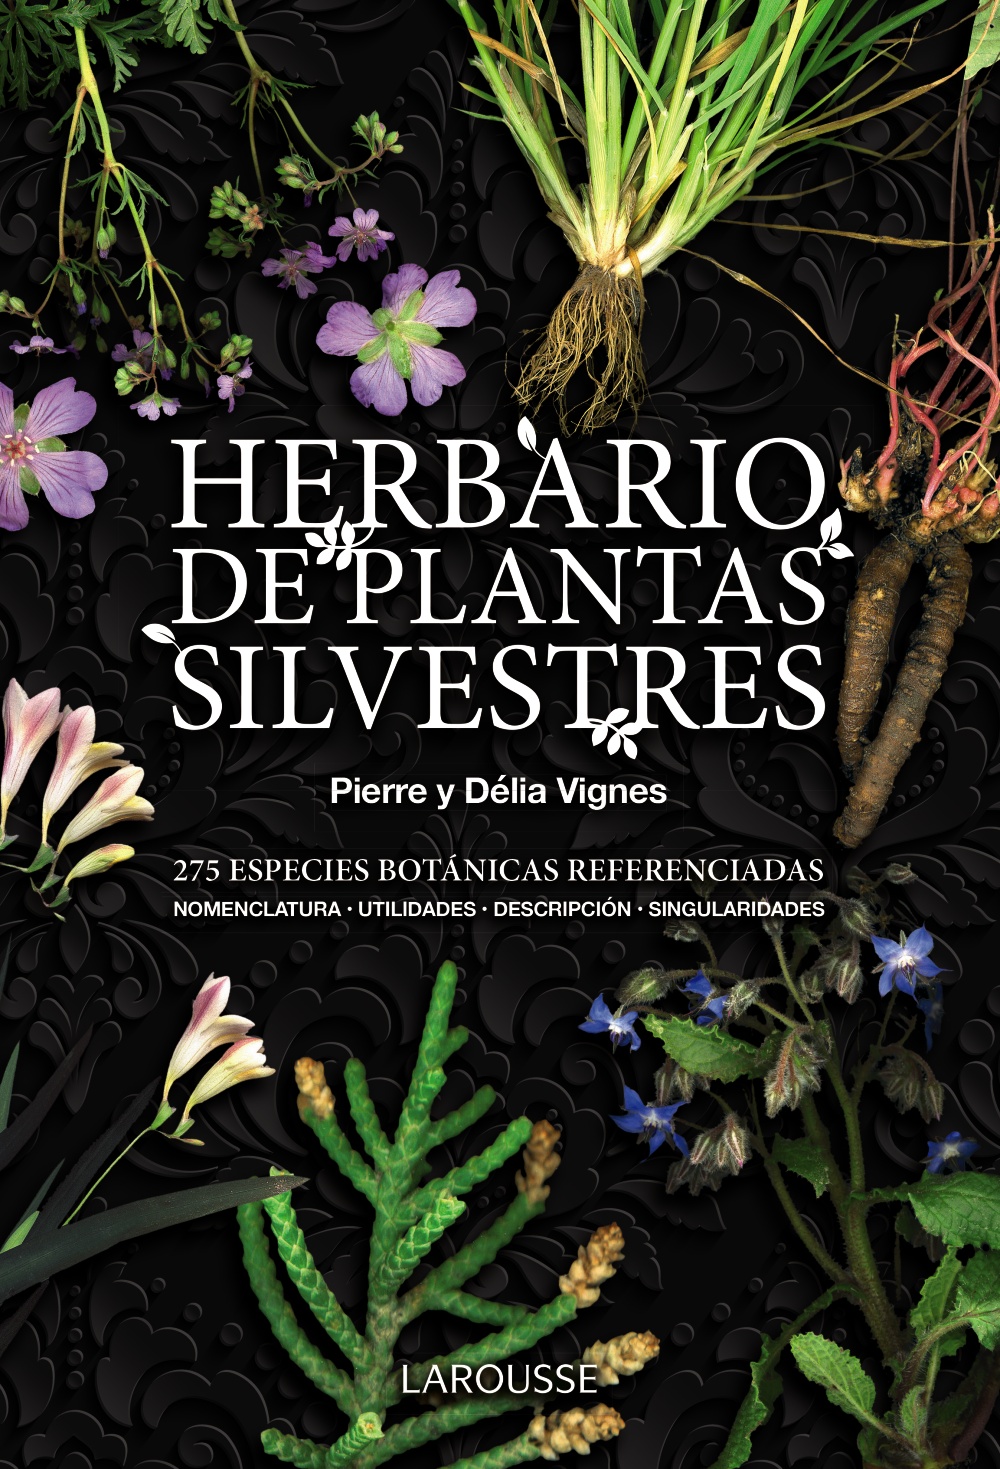 Herbario de plantas silvestres :: Libelista